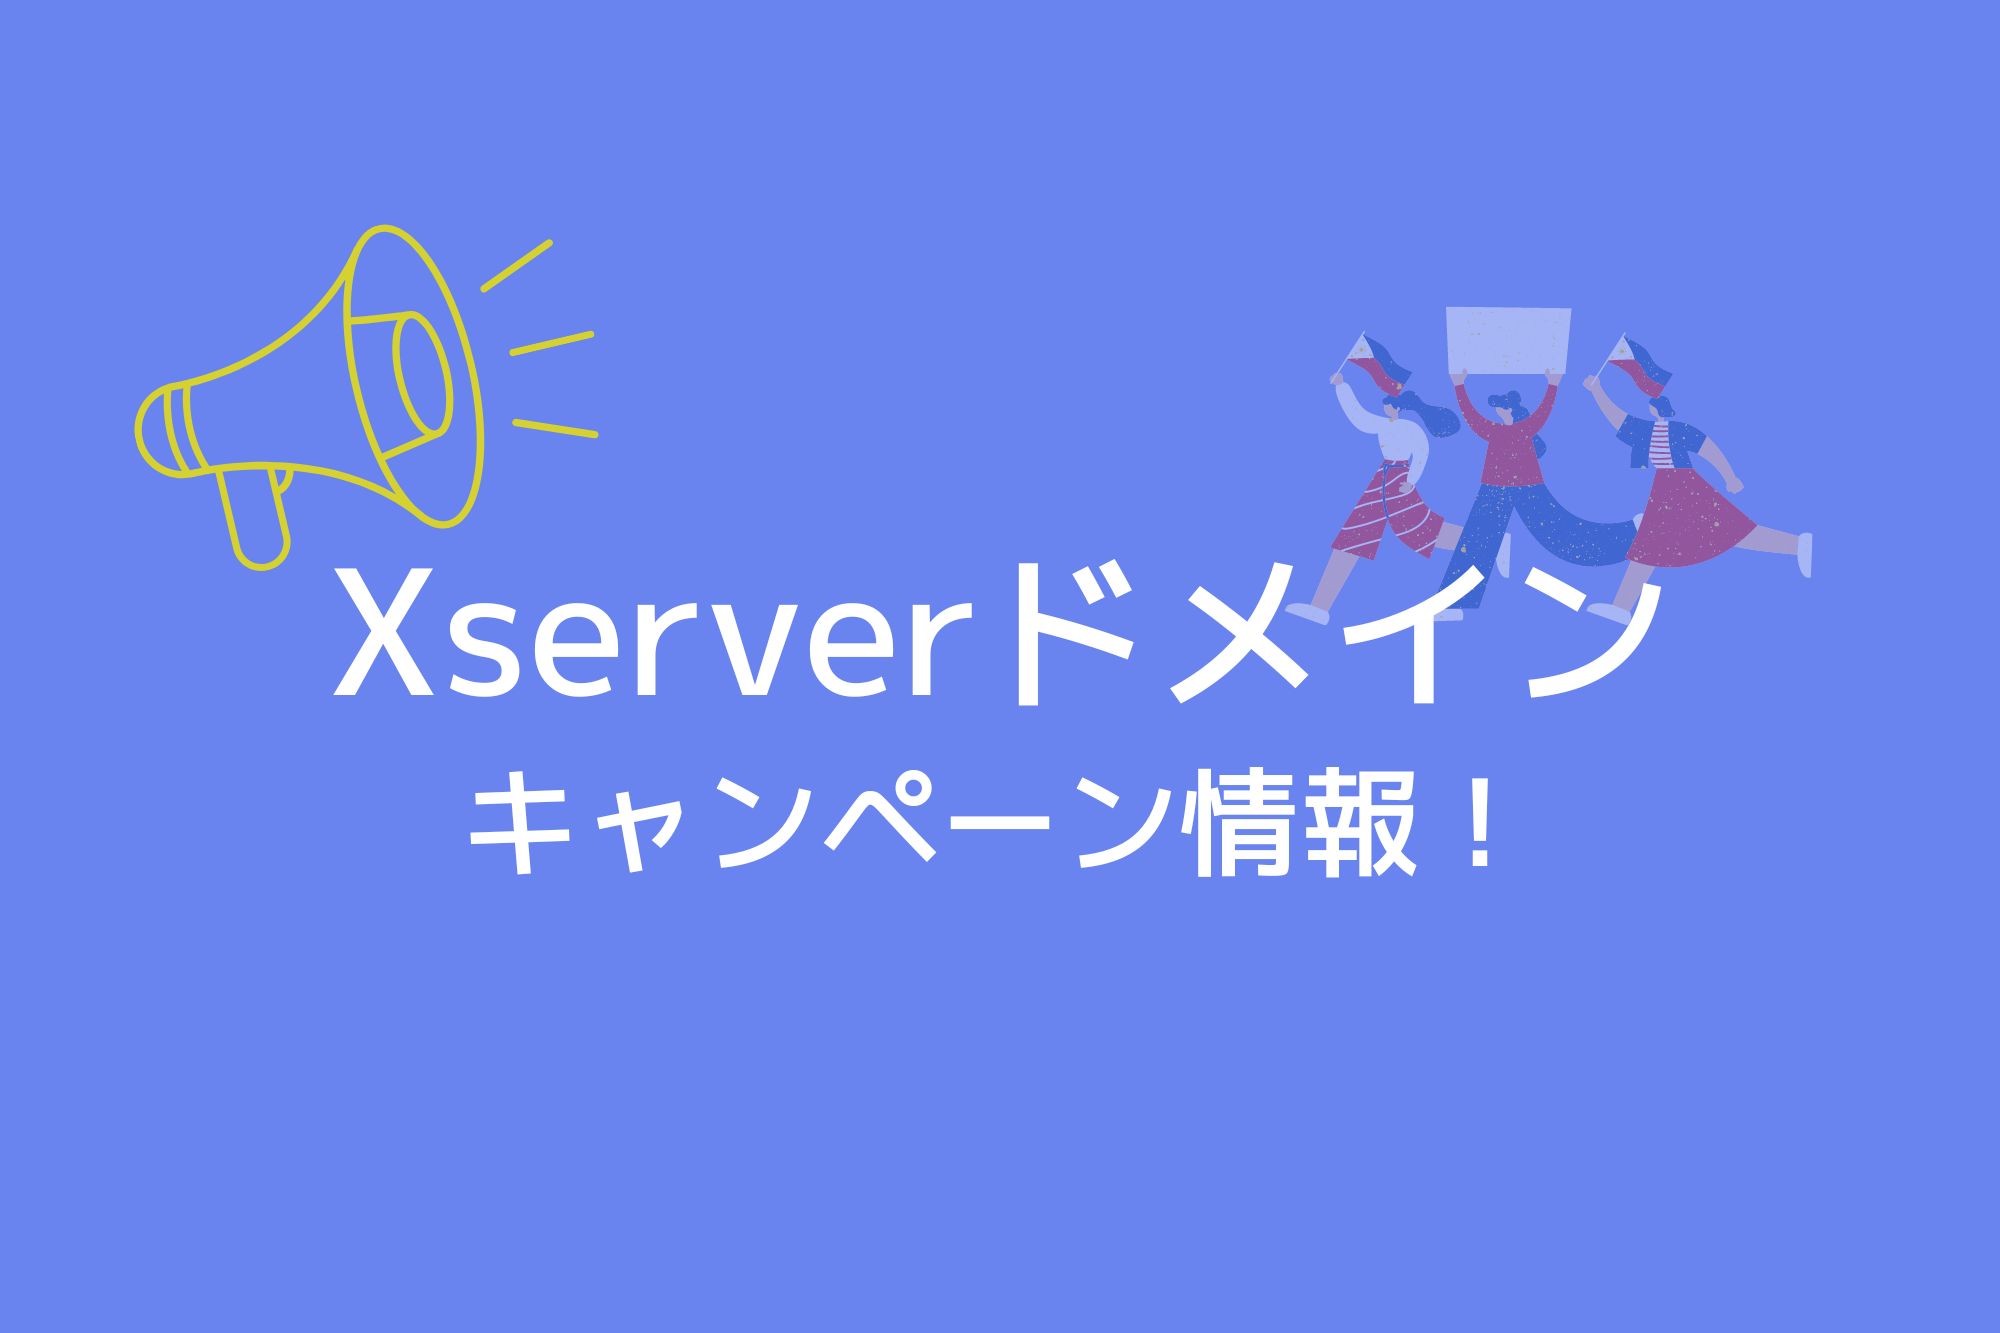 Xserverドメインのキャンペーン情報